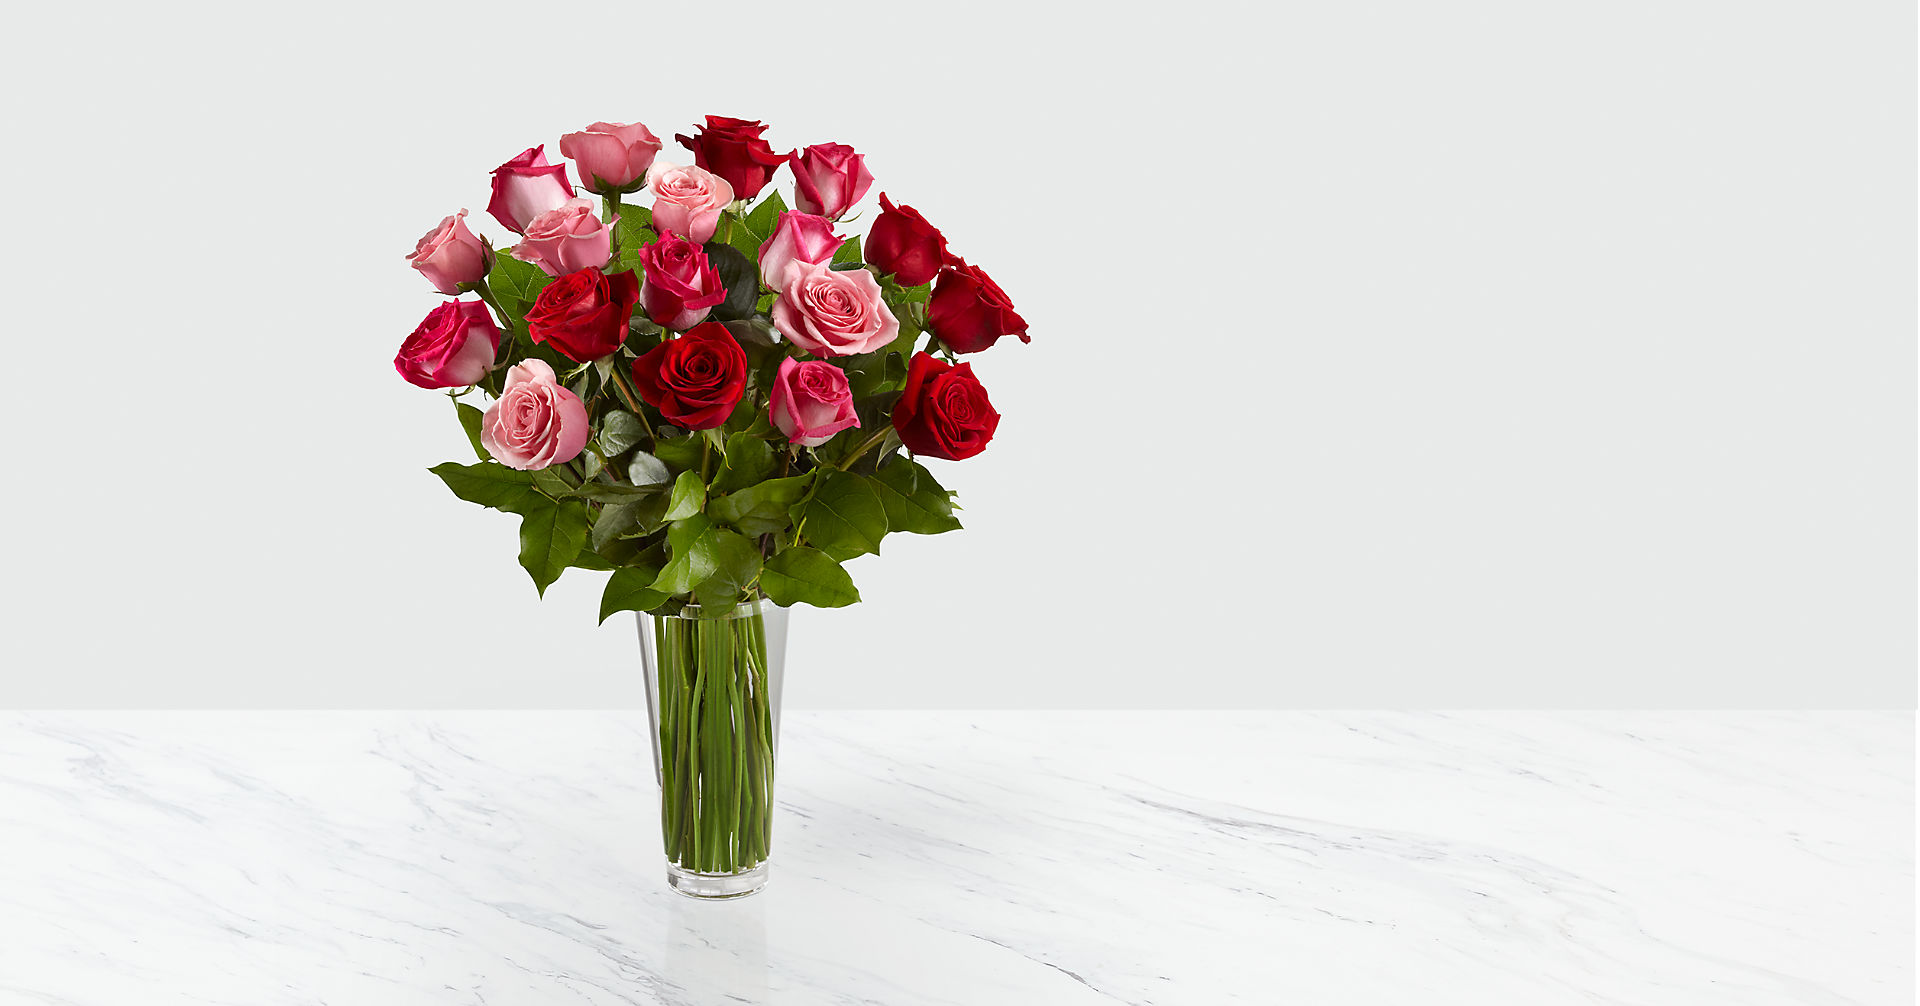 The True Romance - Rose Bouquet Flower Bouquet